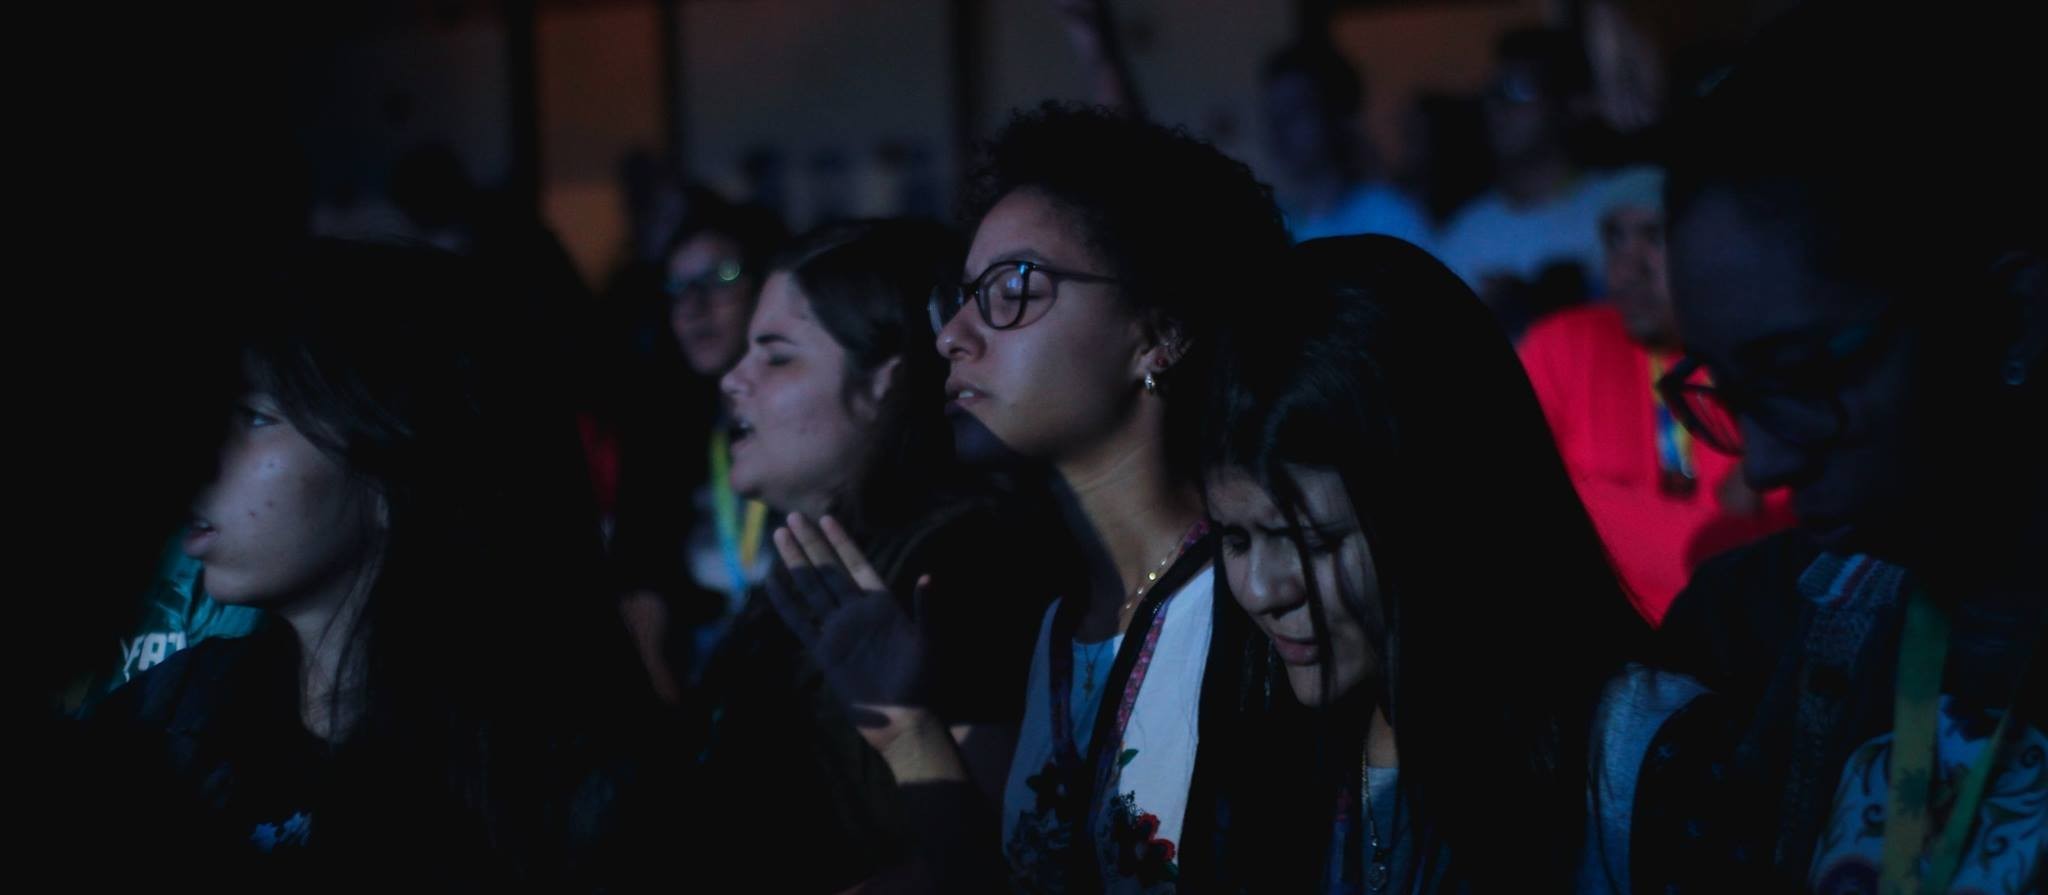 Evento cristão atrai adolescentes de todo país e do exterior